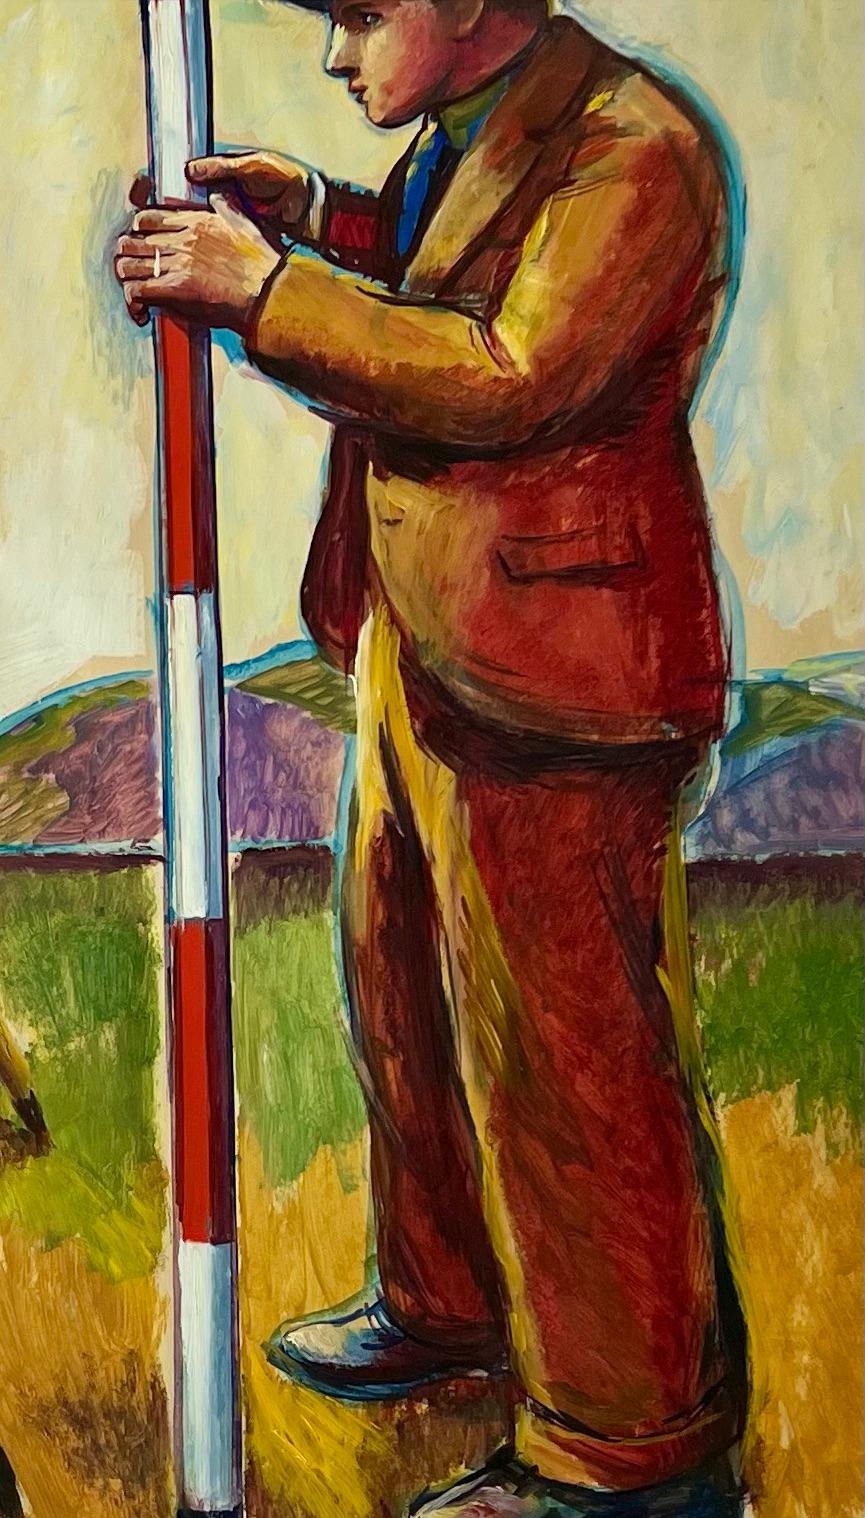 Surveyors WPA Amerikanische Szene Mitte des 20. Jahrhunderts Moderner Sozialrealismus Männer arbeiten

Jo Cain (1904 - 2003)
Vermesser
30 ½ x 40 ¼ Zoll (Sicht)
Gouache auf Papier ca. 1930er Jahre
Signiert unten rechts mit Matte